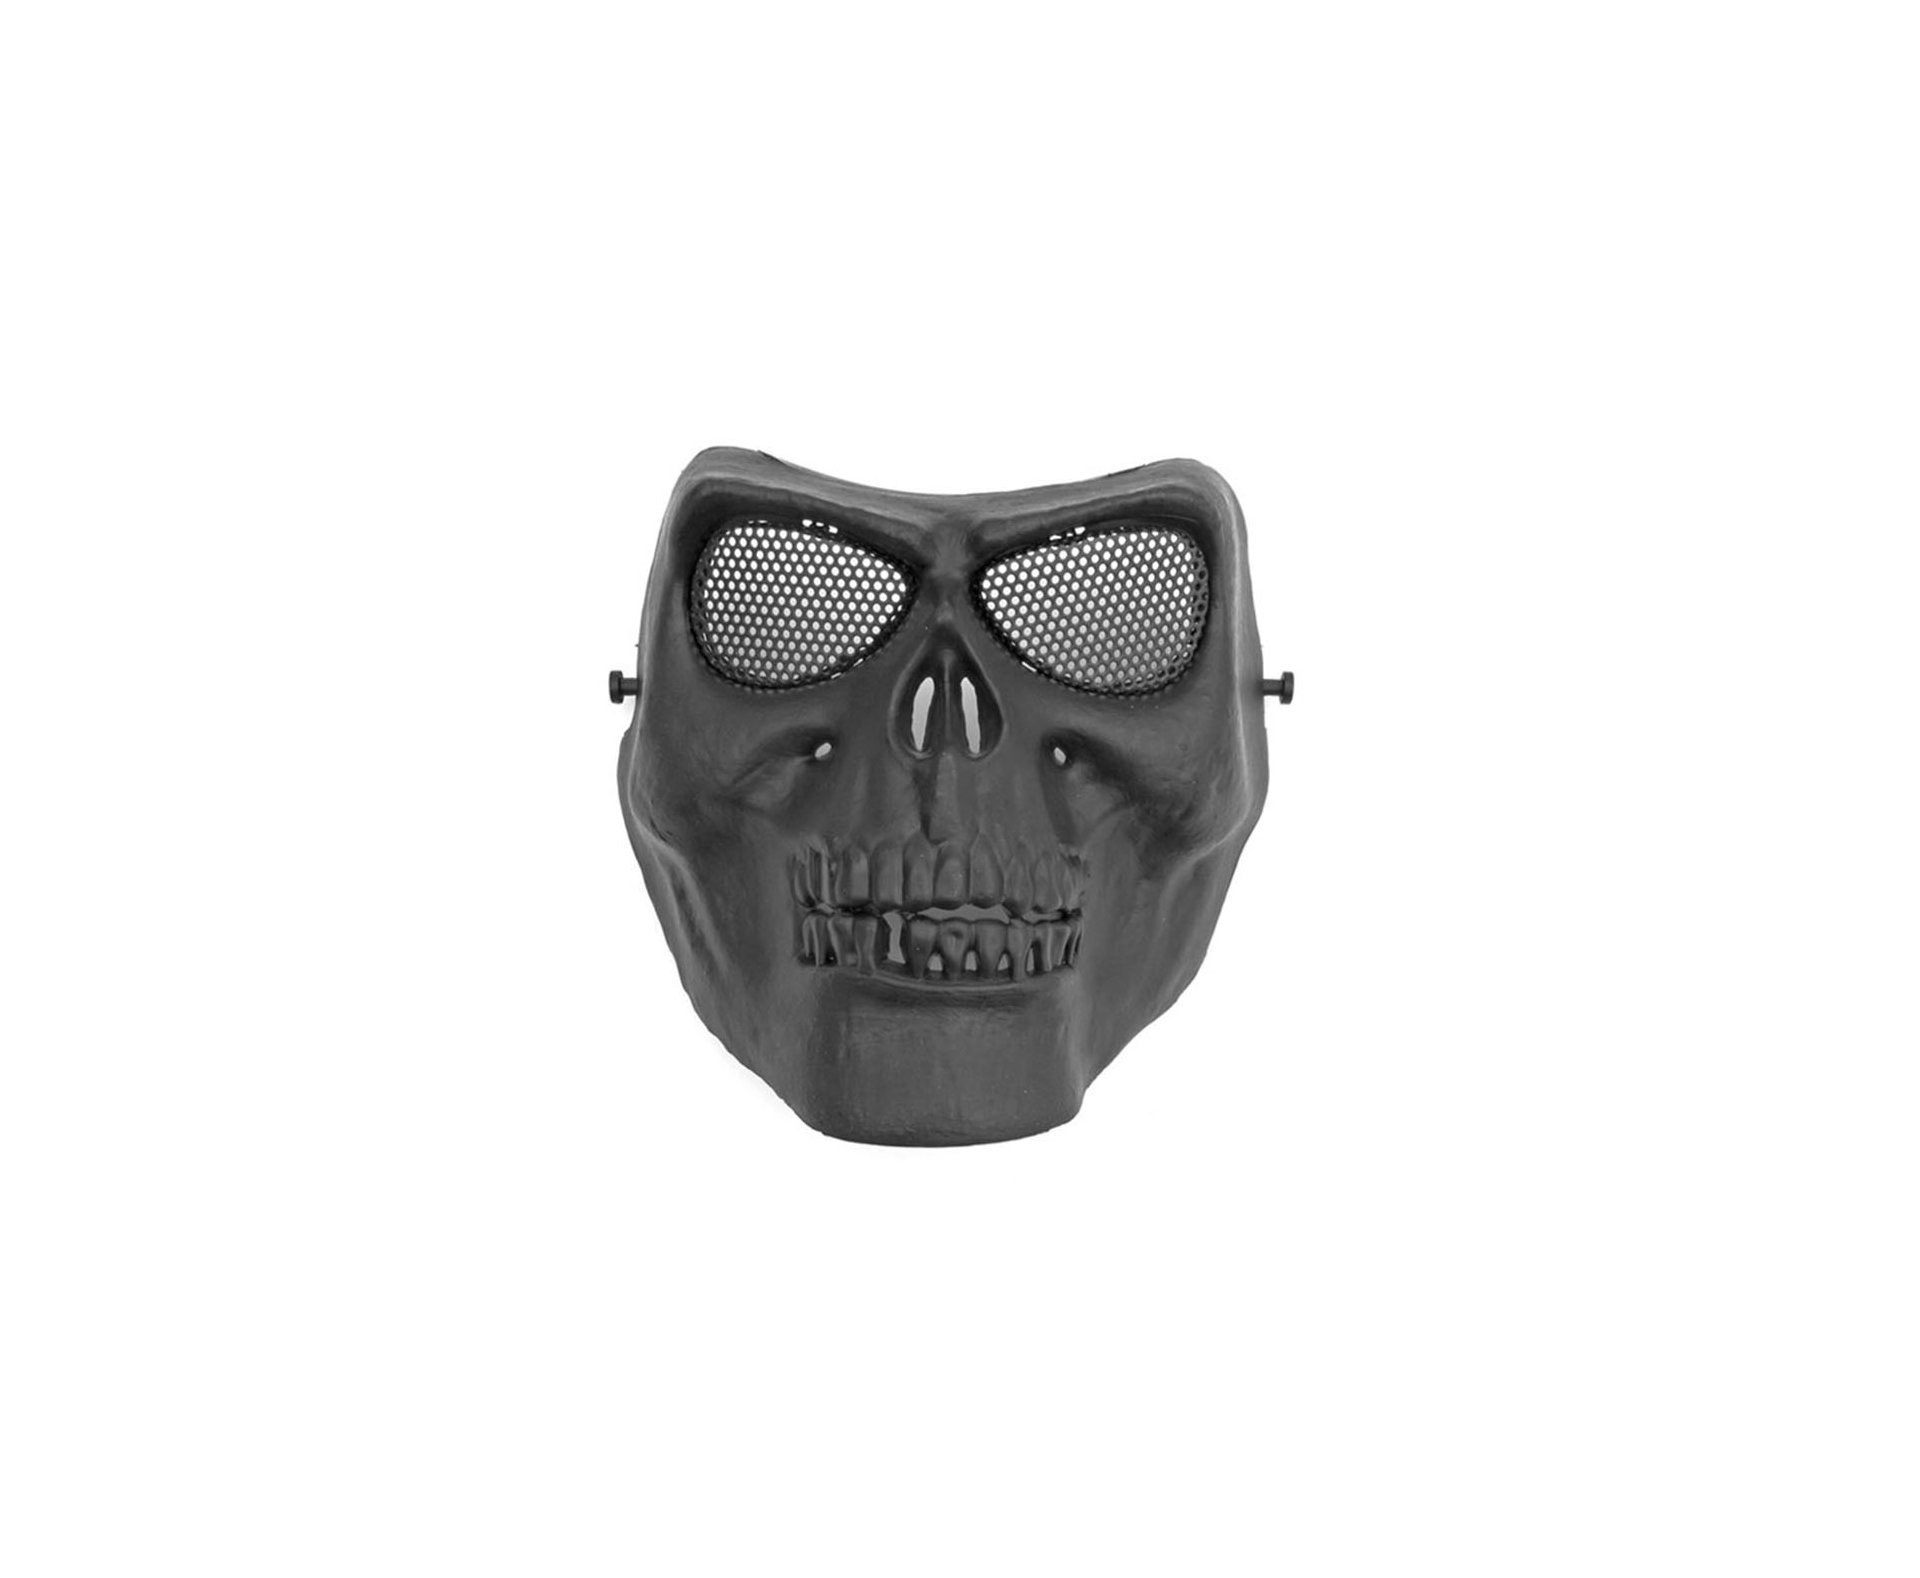 Mascara Tatica De Caveira Em Abs C/proteção De Tela Em Metal - Preta